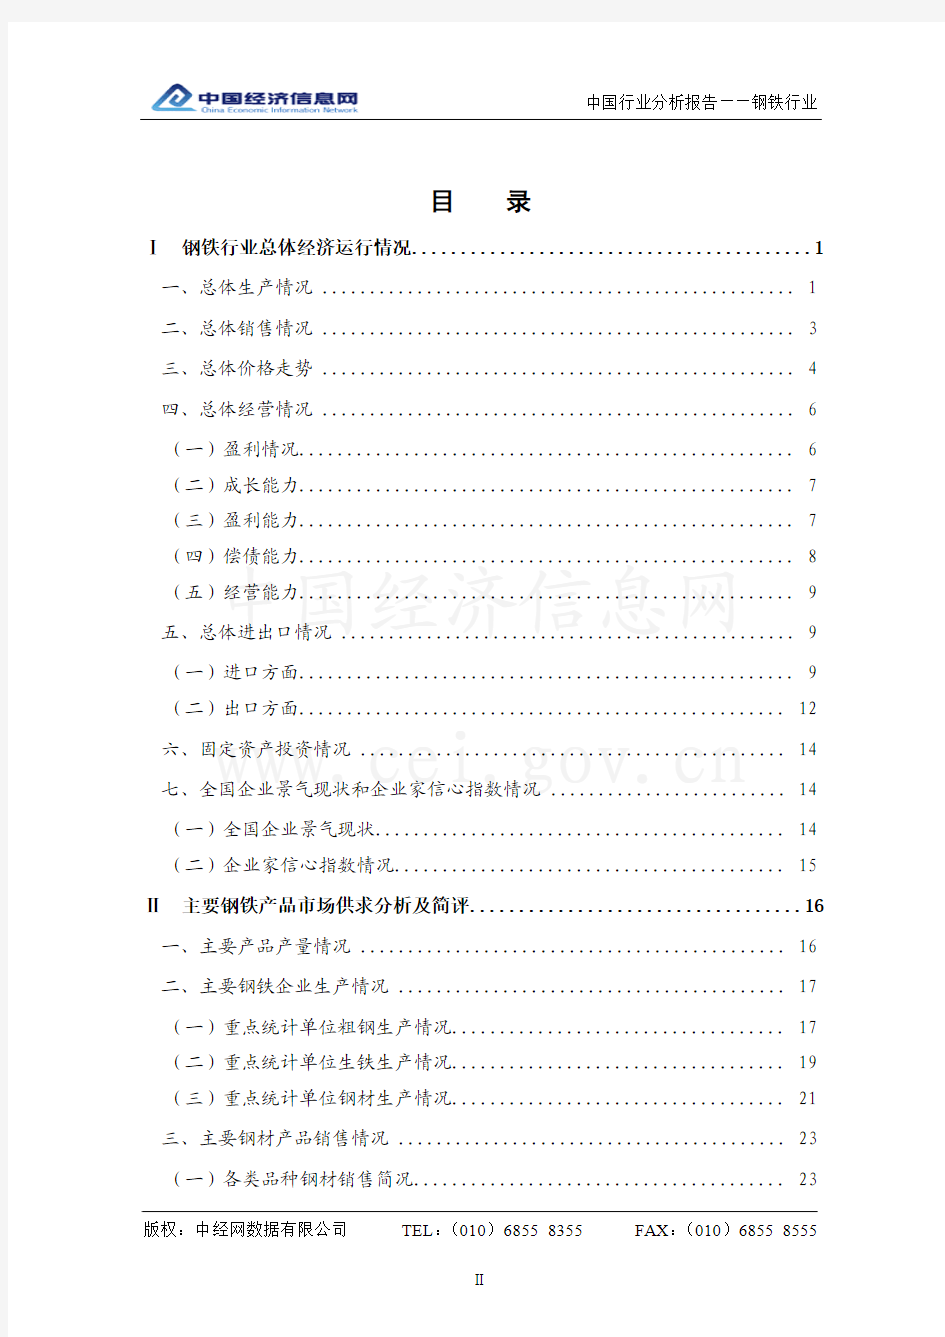 中国钢铁行业分析报告(2010 年3 季度)